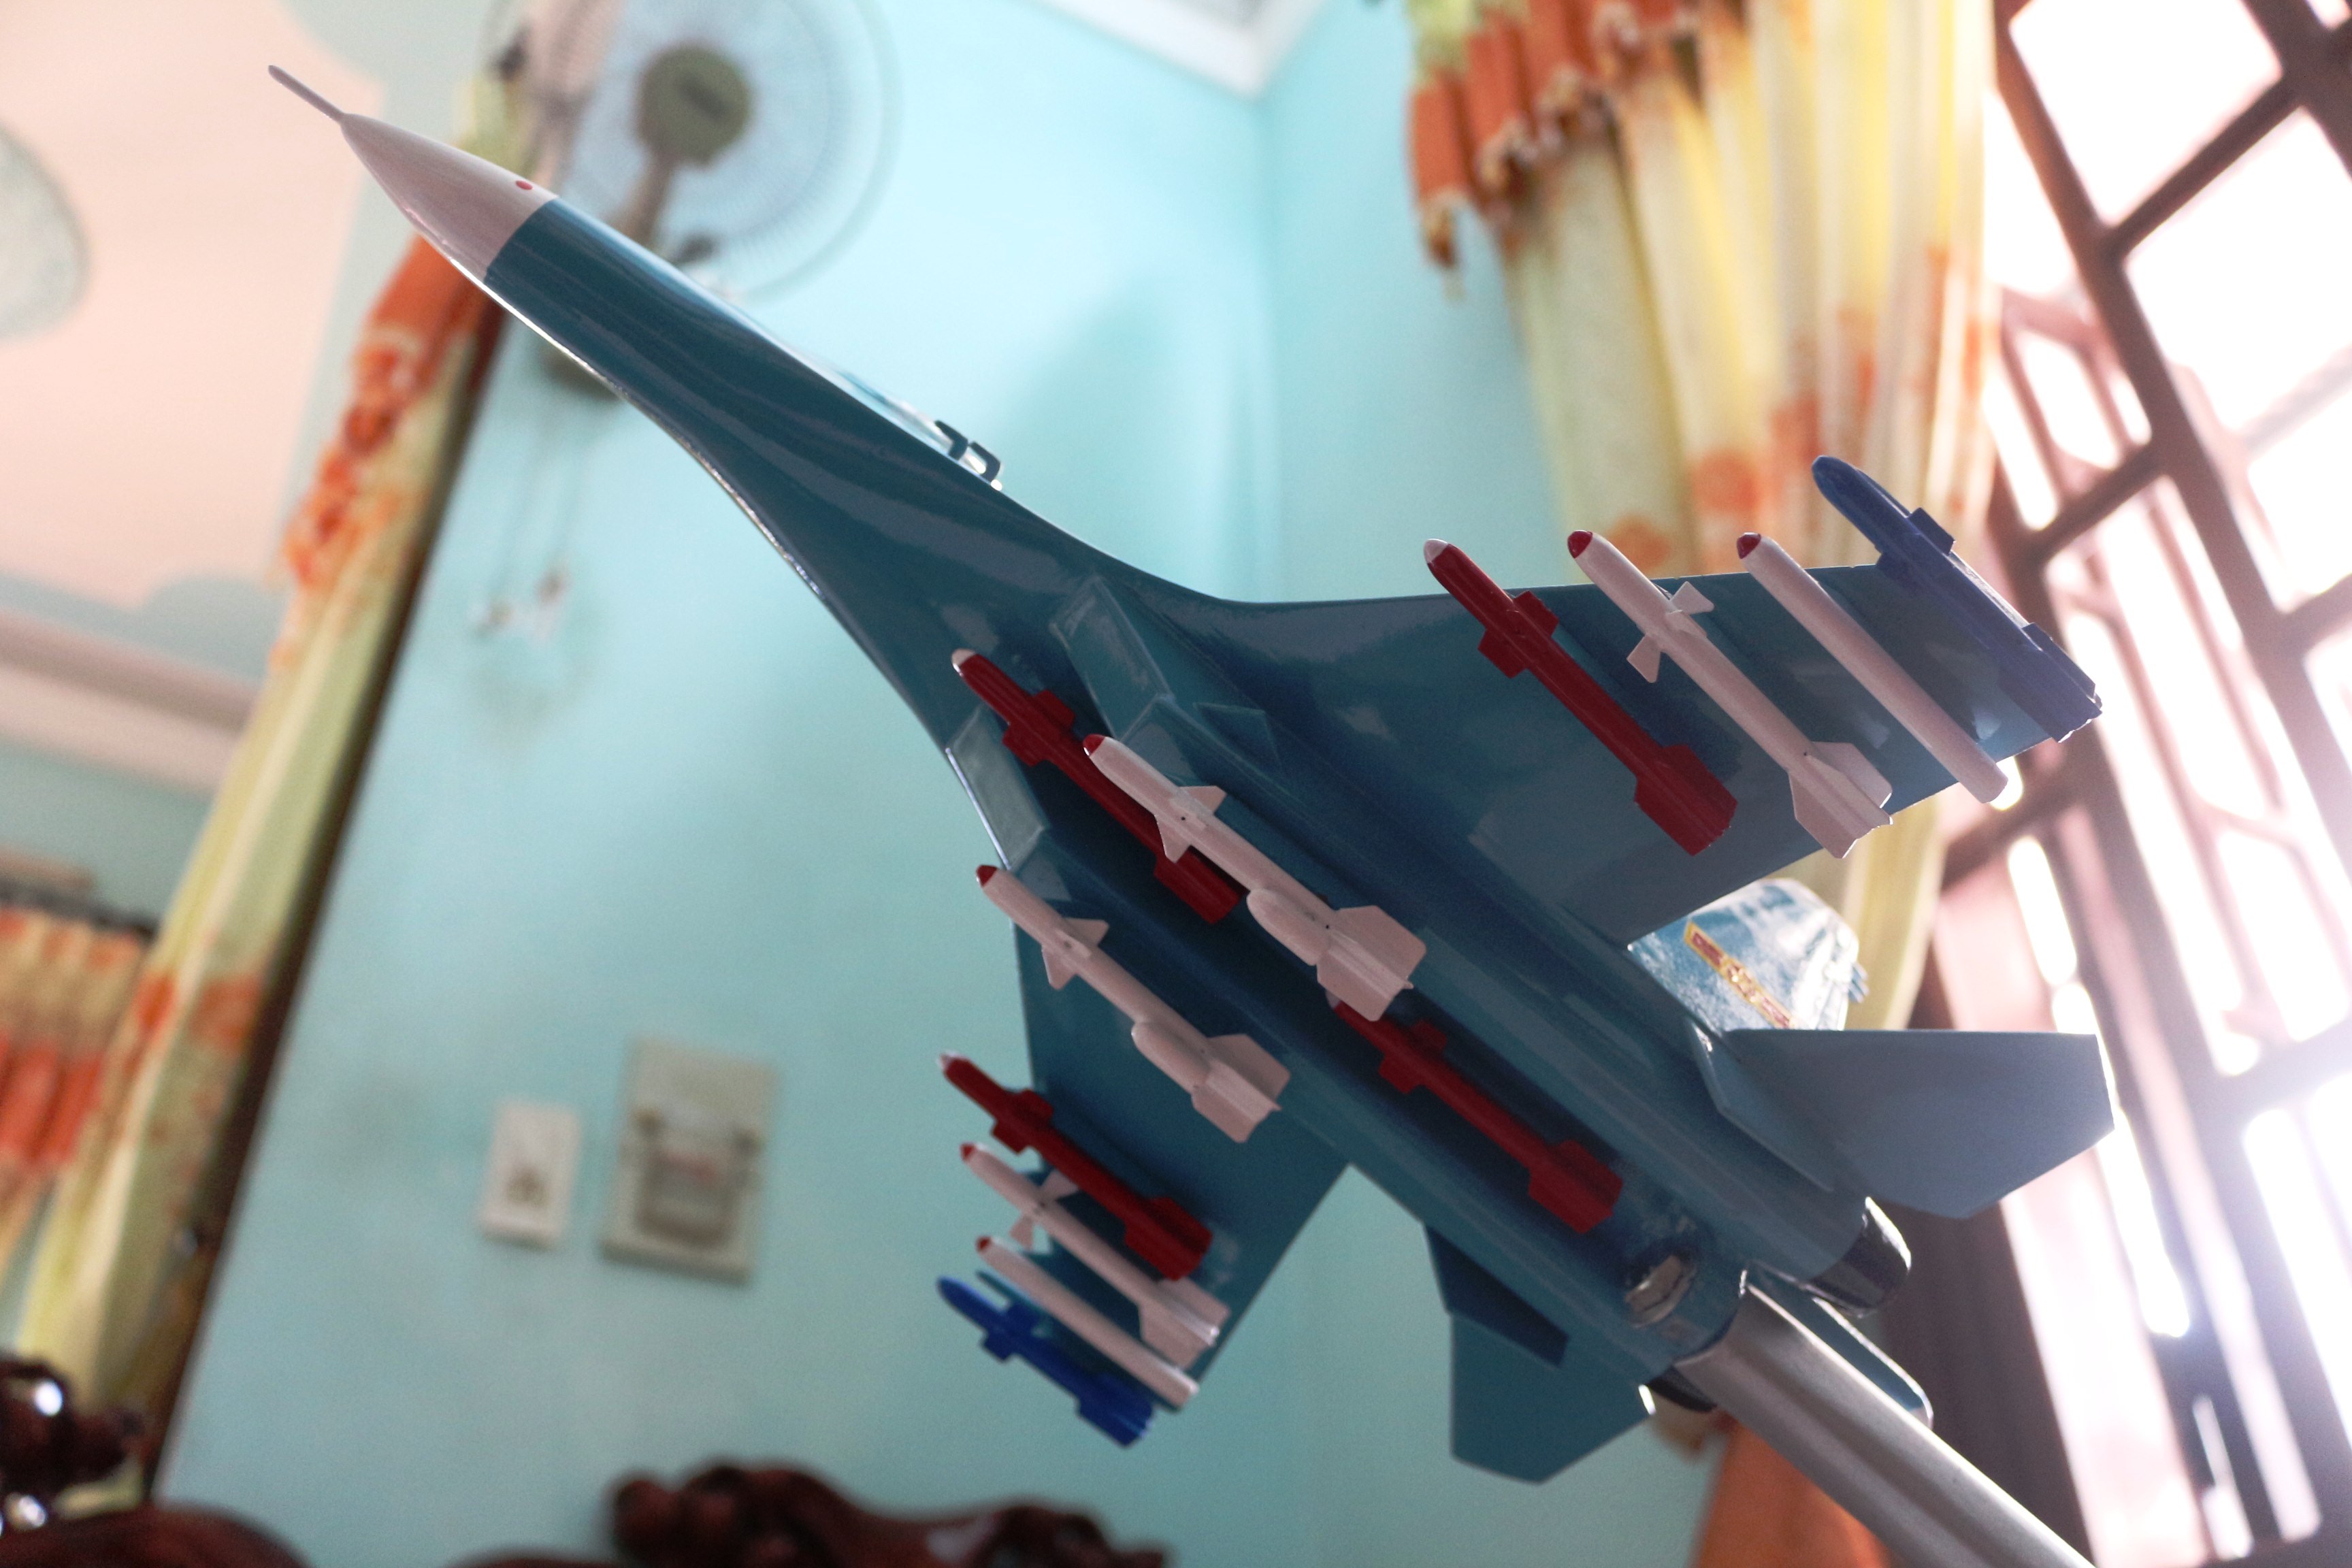 Mô hình máy bay chiến đấu là sự lựa chọn hoàn hảo cho những người yêu thích máy bay! Xem hình ảnh để tìm hiểu chi tiết về mô hình này nhé!